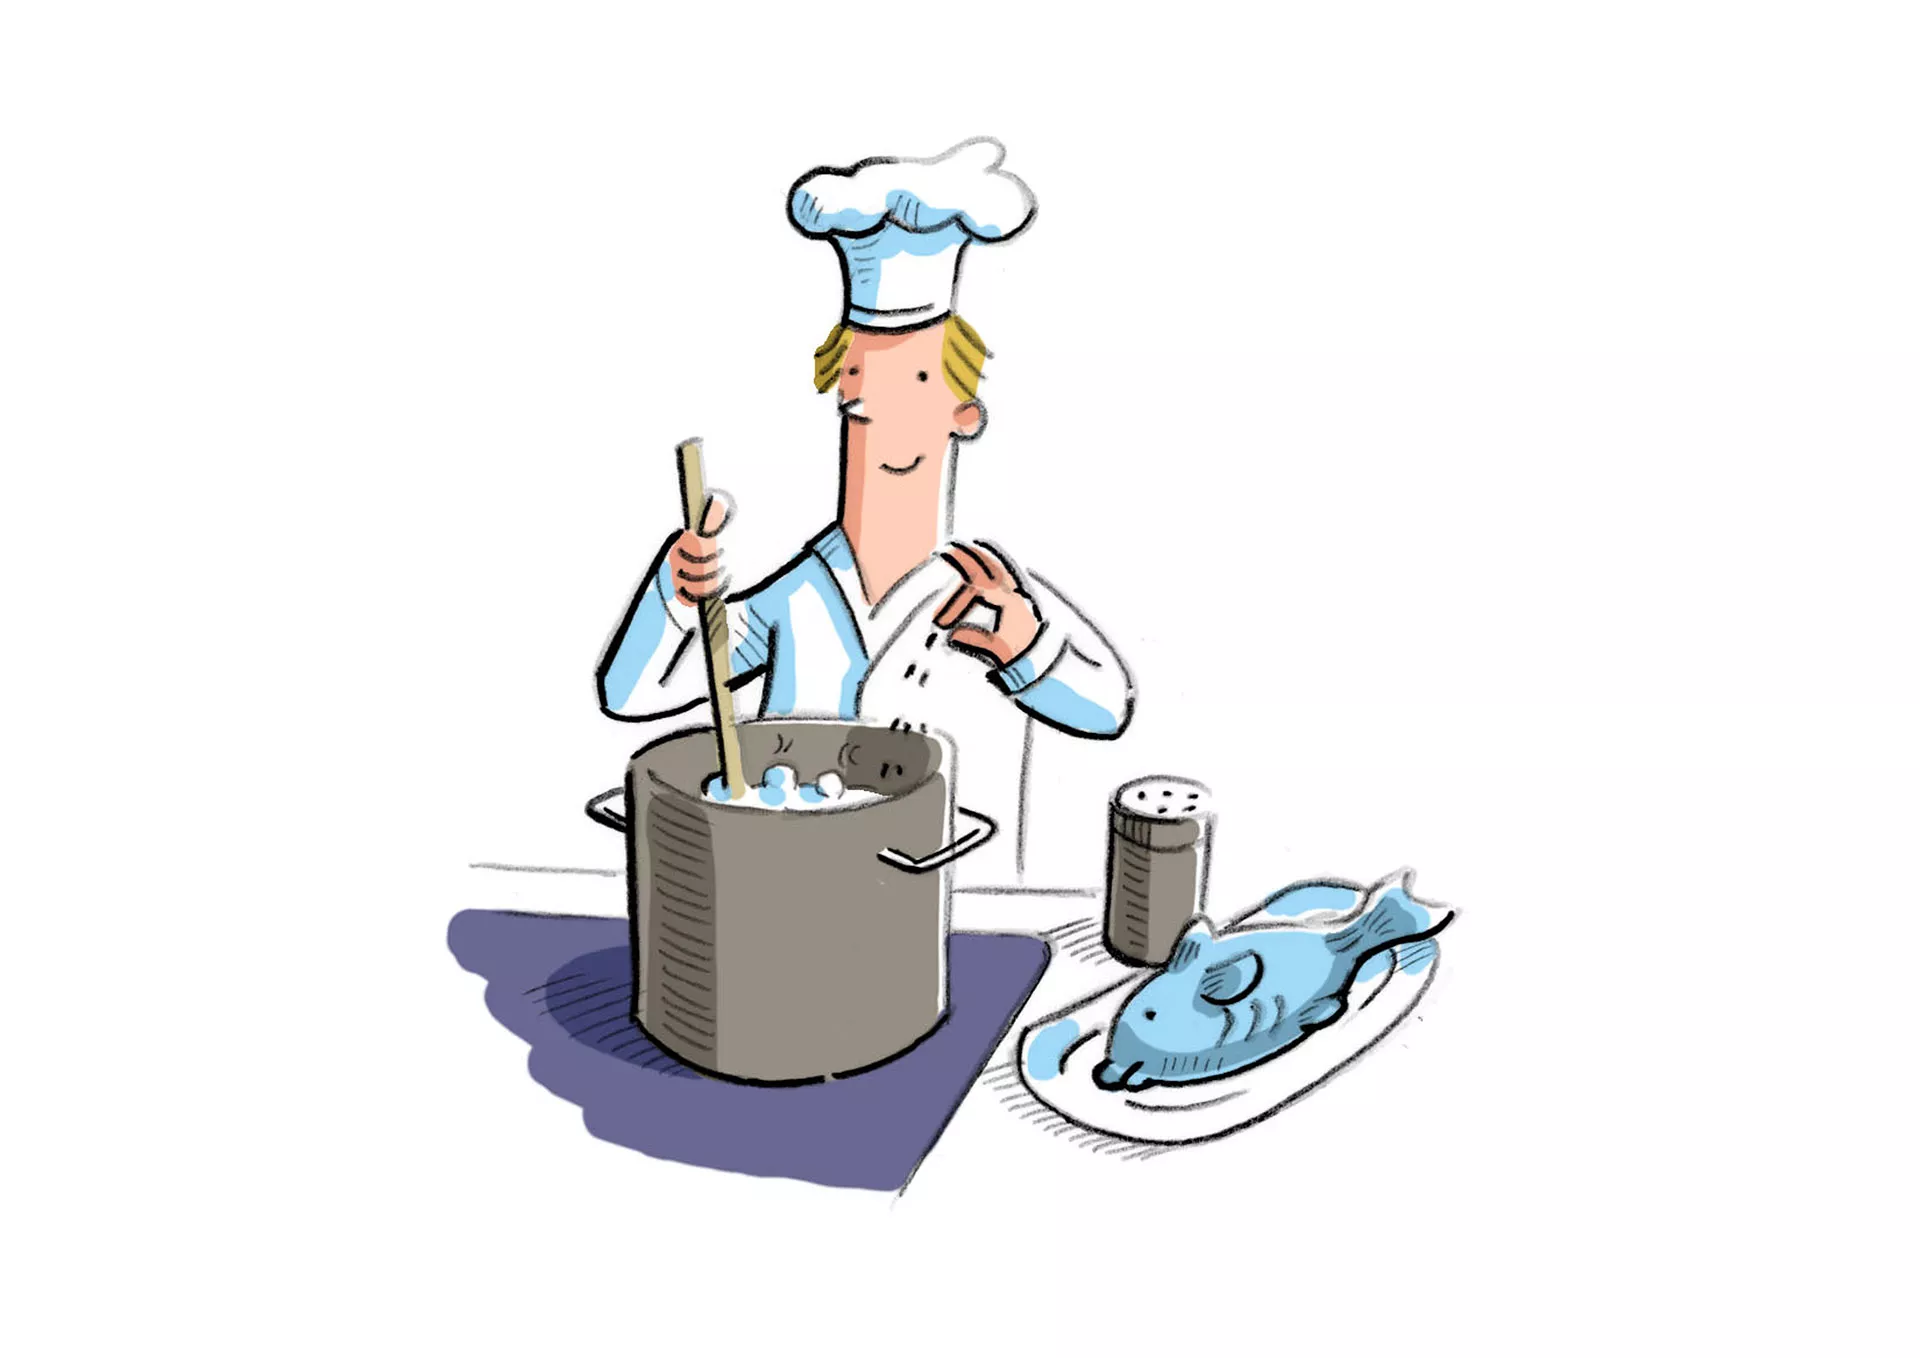 Bild: Koch rührt in einem Koch-Topf